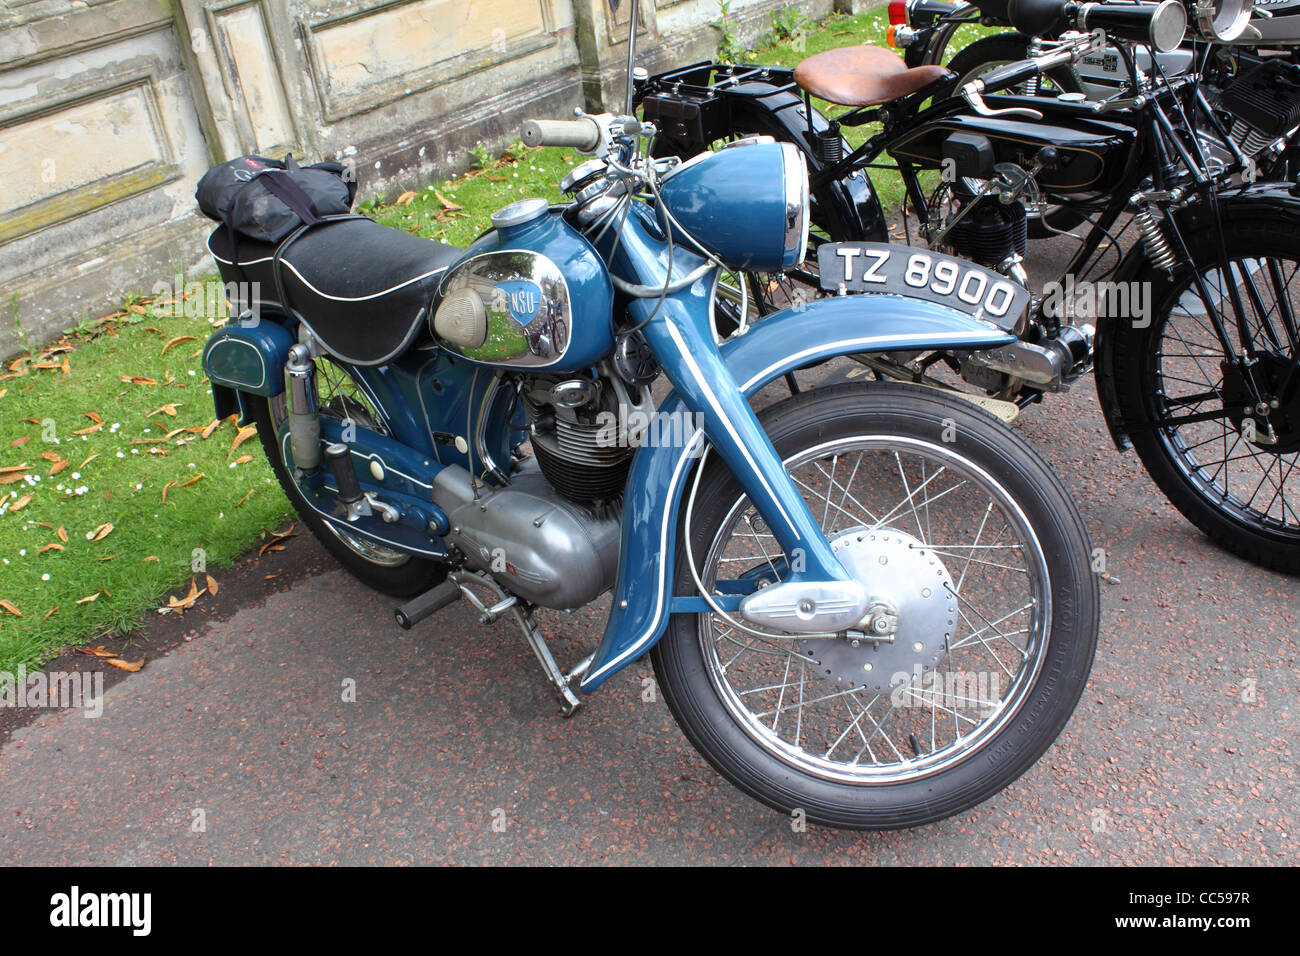 klassisches NSU Motorrad bei einer Show in Nordirland Stockfotografie -  Alamy